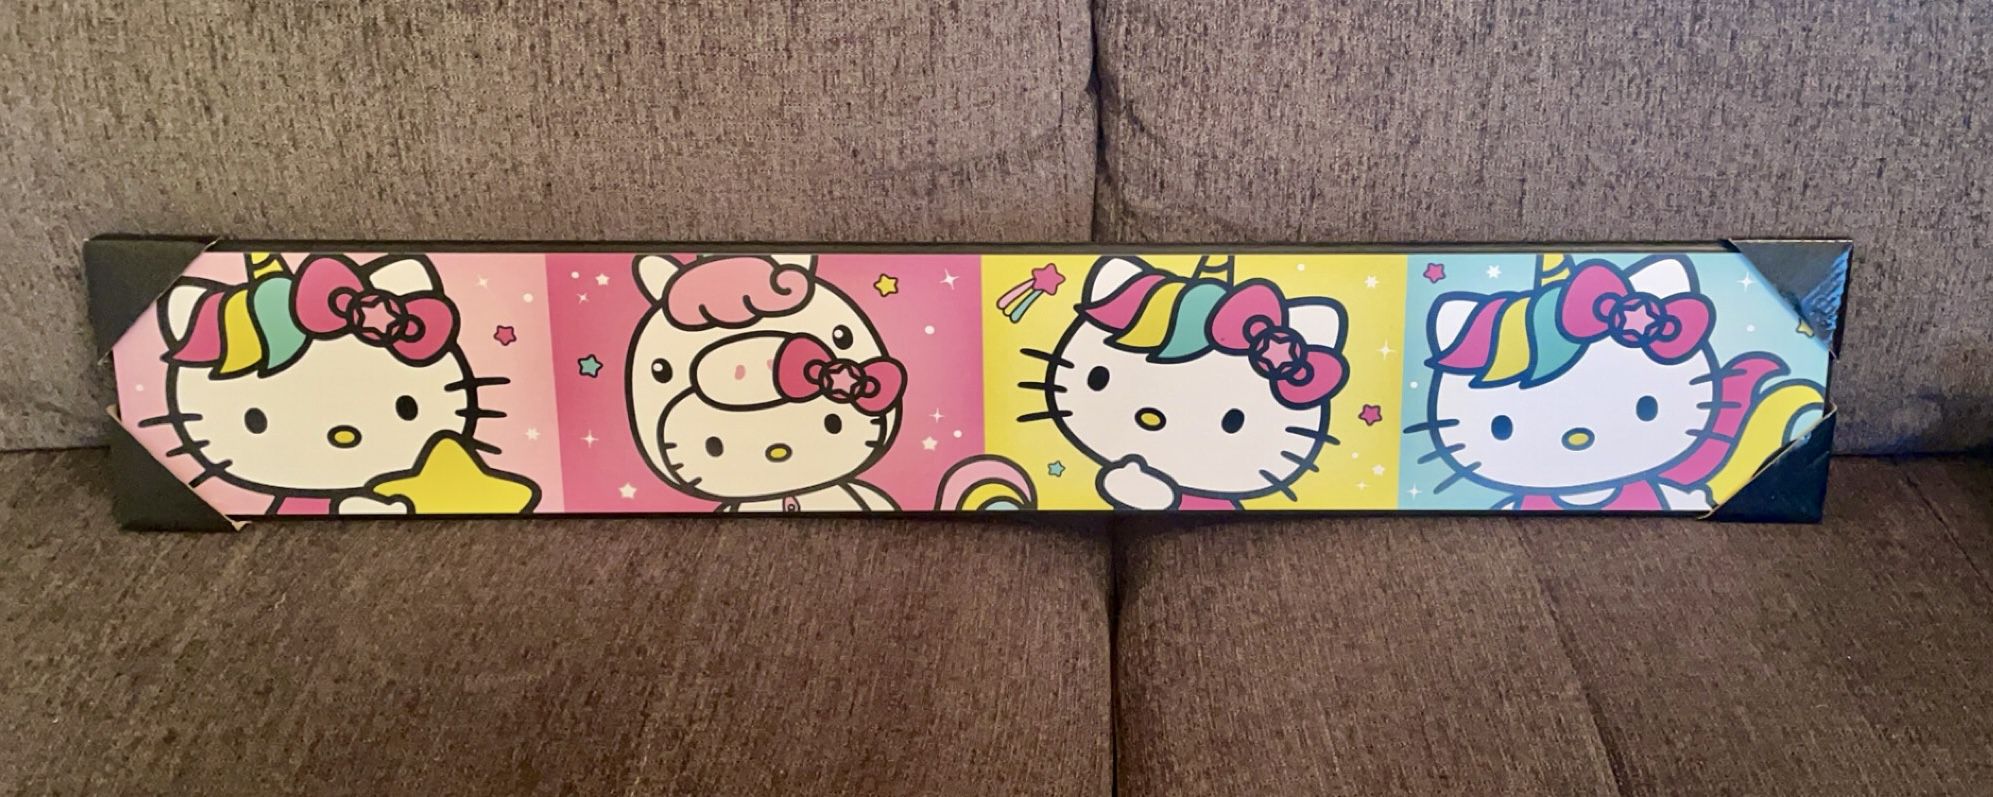 Hello Kitty Wall Decor